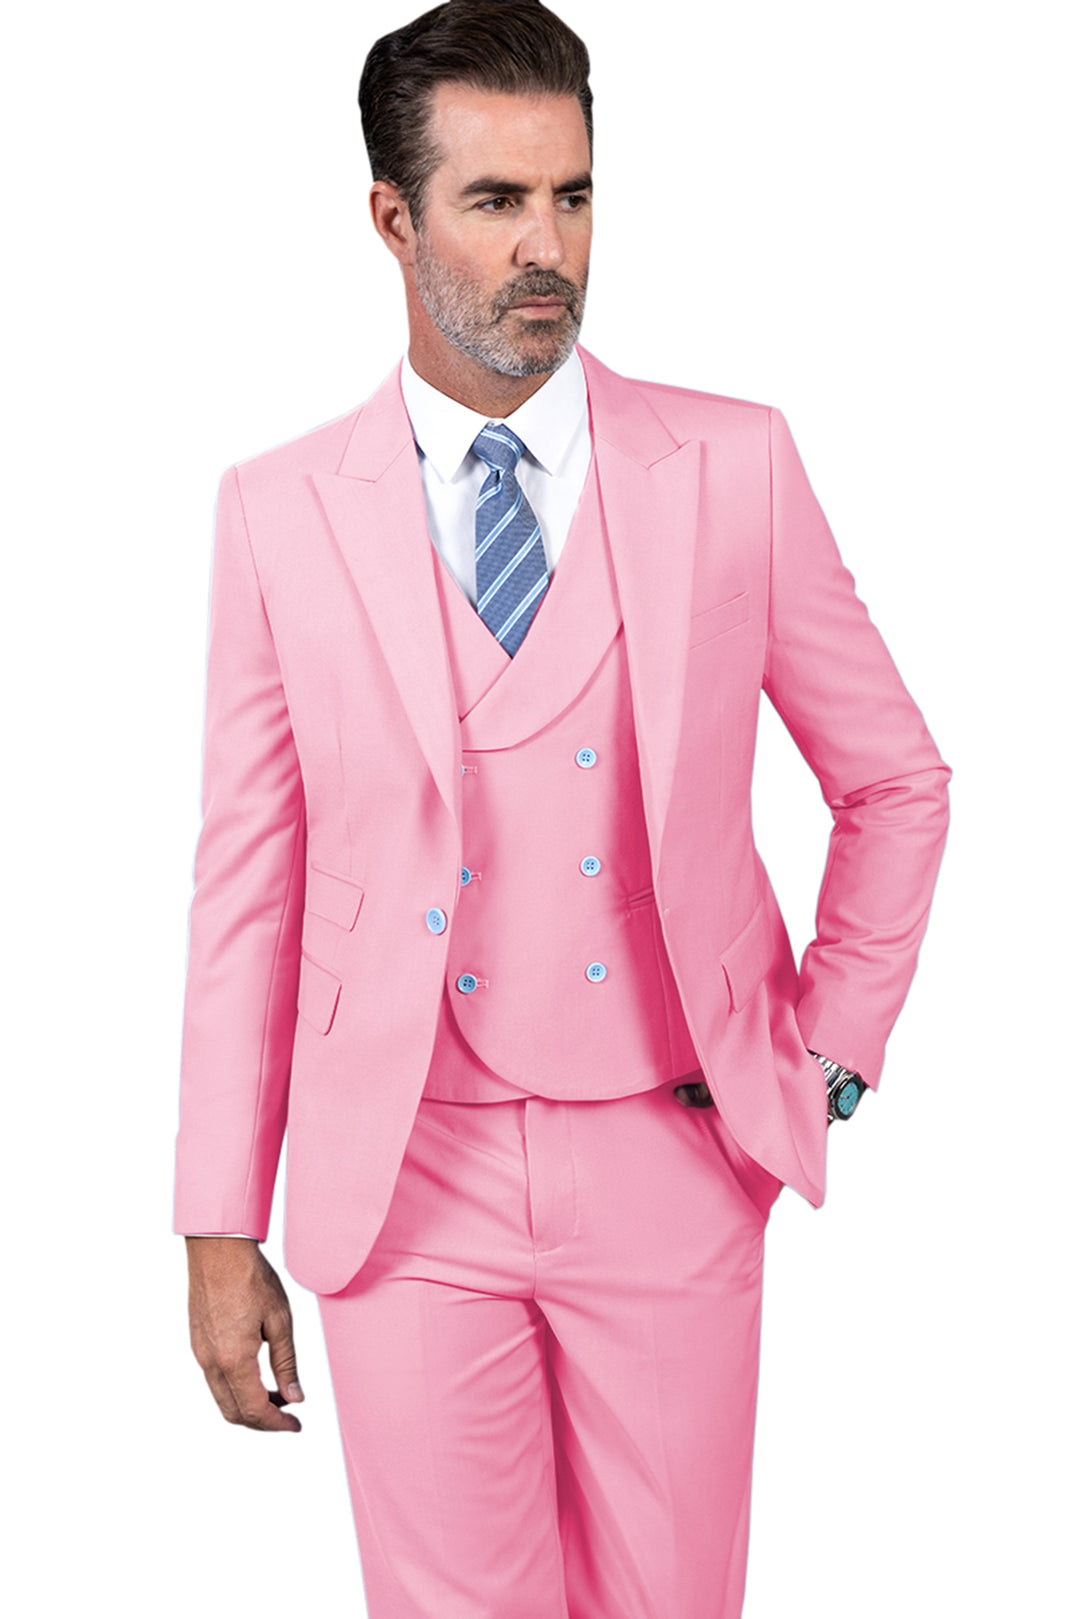 3 Piece Mens Suit Slim Fit Vest Solid Peak lapel Suit (Blazer+Vest+Pants) mens event wear